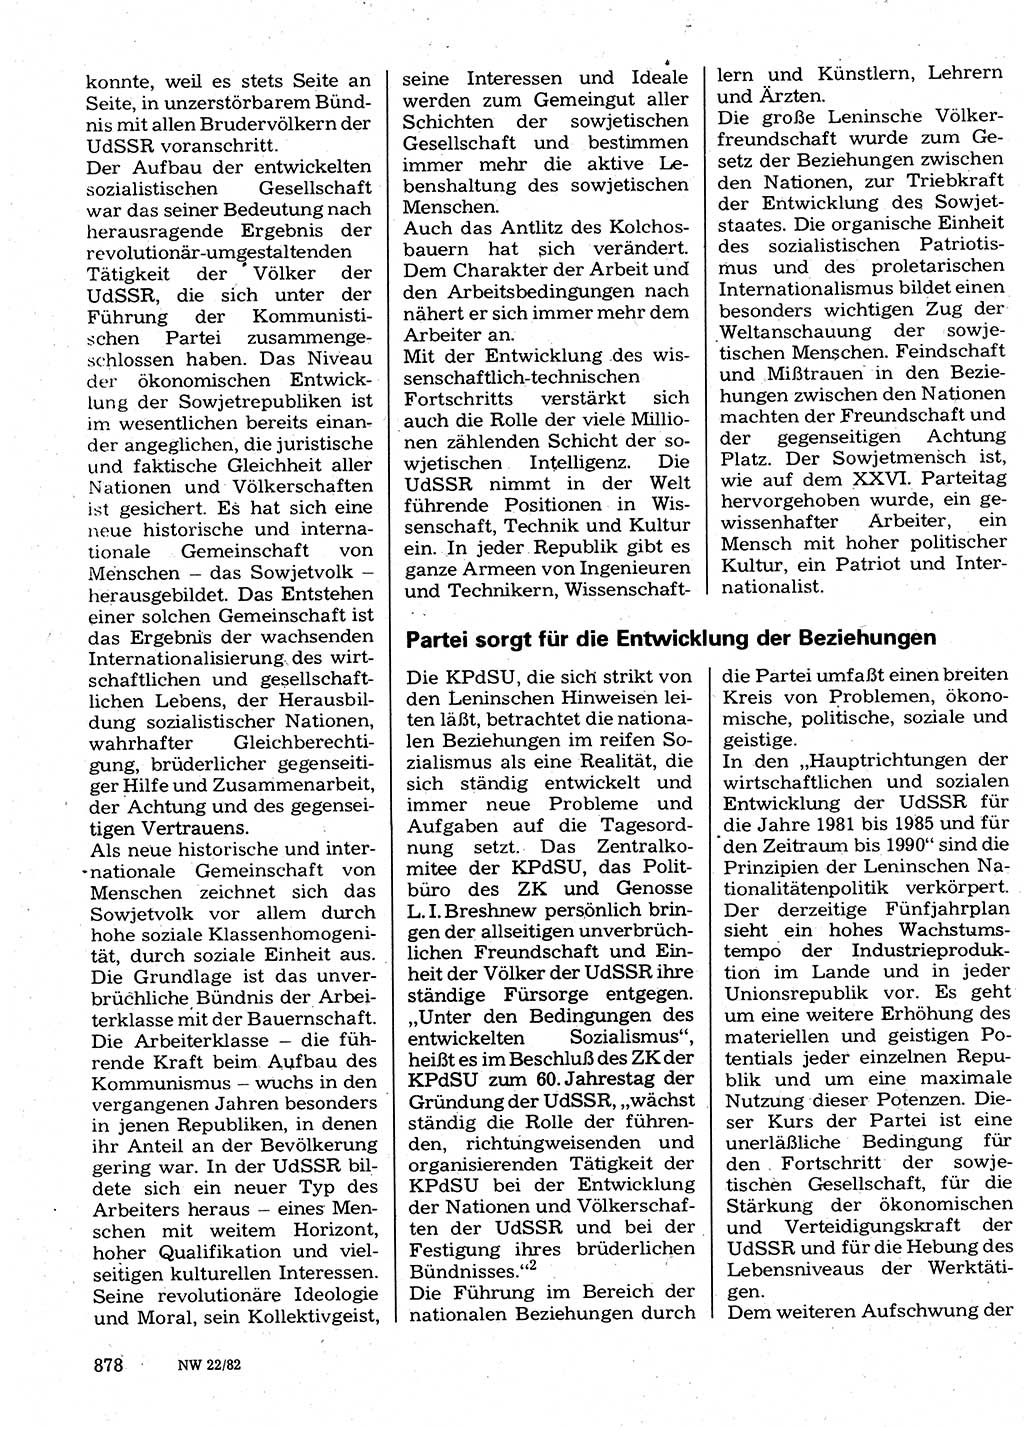 Neuer Weg (NW), Organ des Zentralkomitees (ZK) der SED (Sozialistische Einheitspartei Deutschlands) für Fragen des Parteilebens, 37. Jahrgang [Deutsche Demokratische Republik (DDR)] 1982, Seite 878 (NW ZK SED DDR 1982, S. 878)